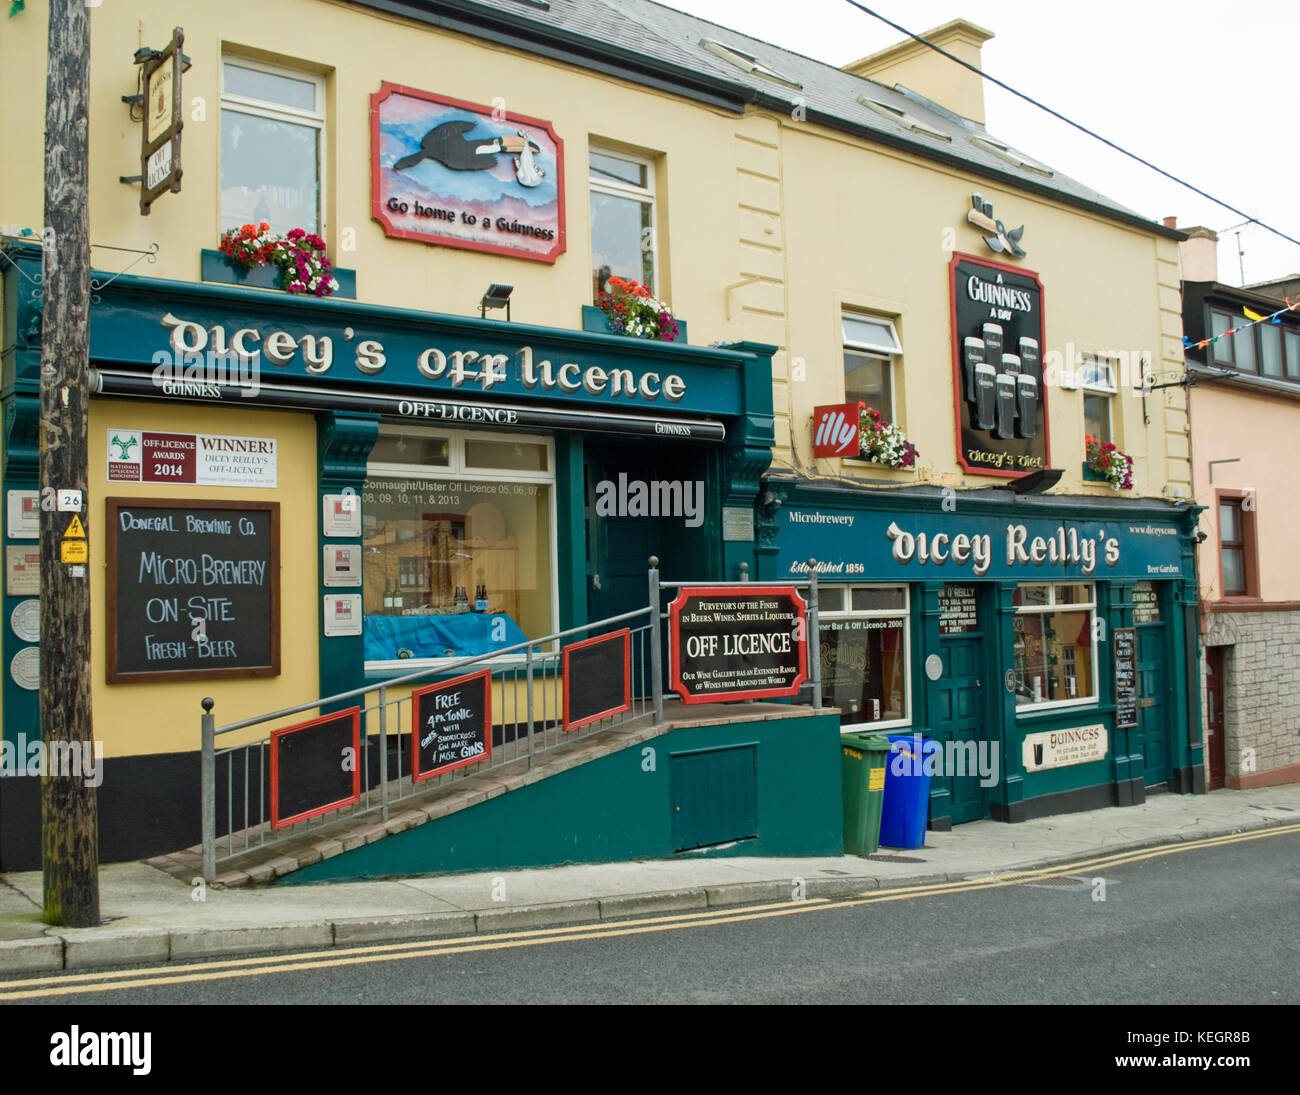 Famoso dicey reilly's pub birreria e off in licenza ballyshannon, County Donegal Foto Stock